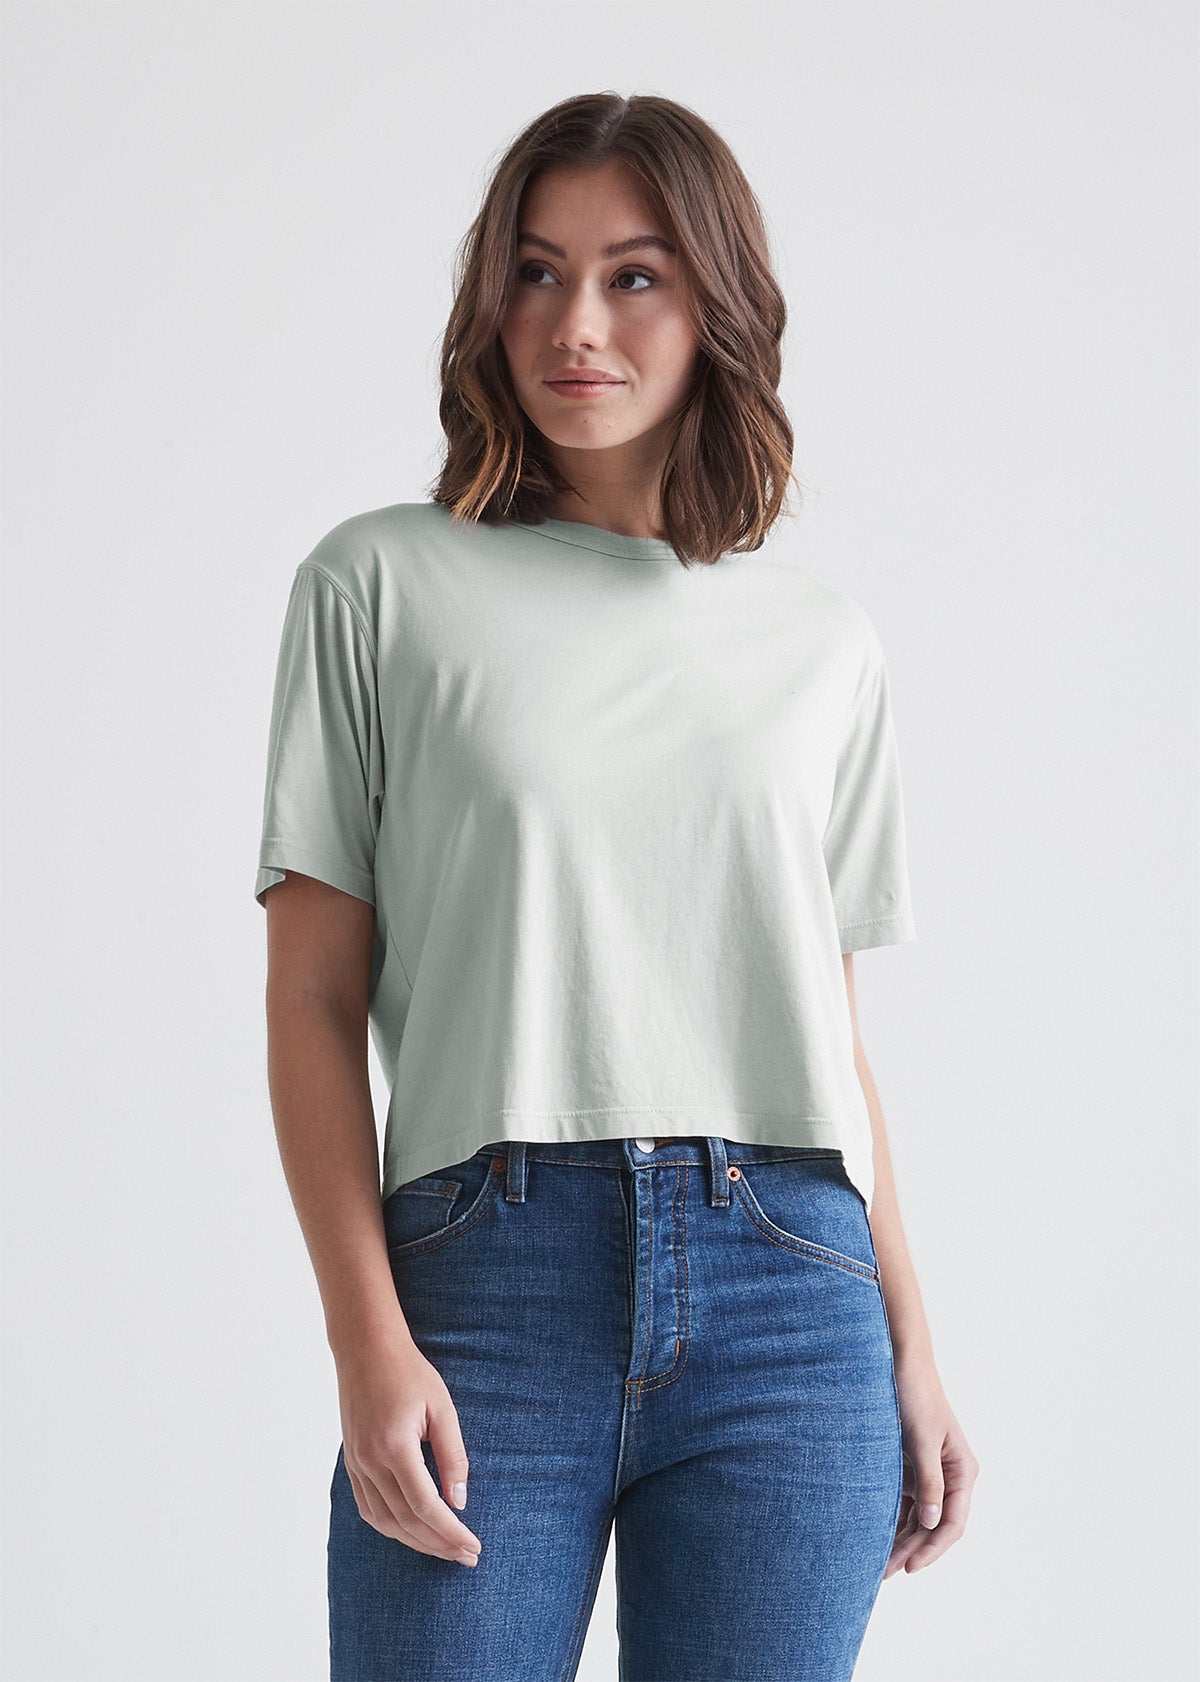 Women's Light Green Soft Lightweight Crop T-Shirt Front